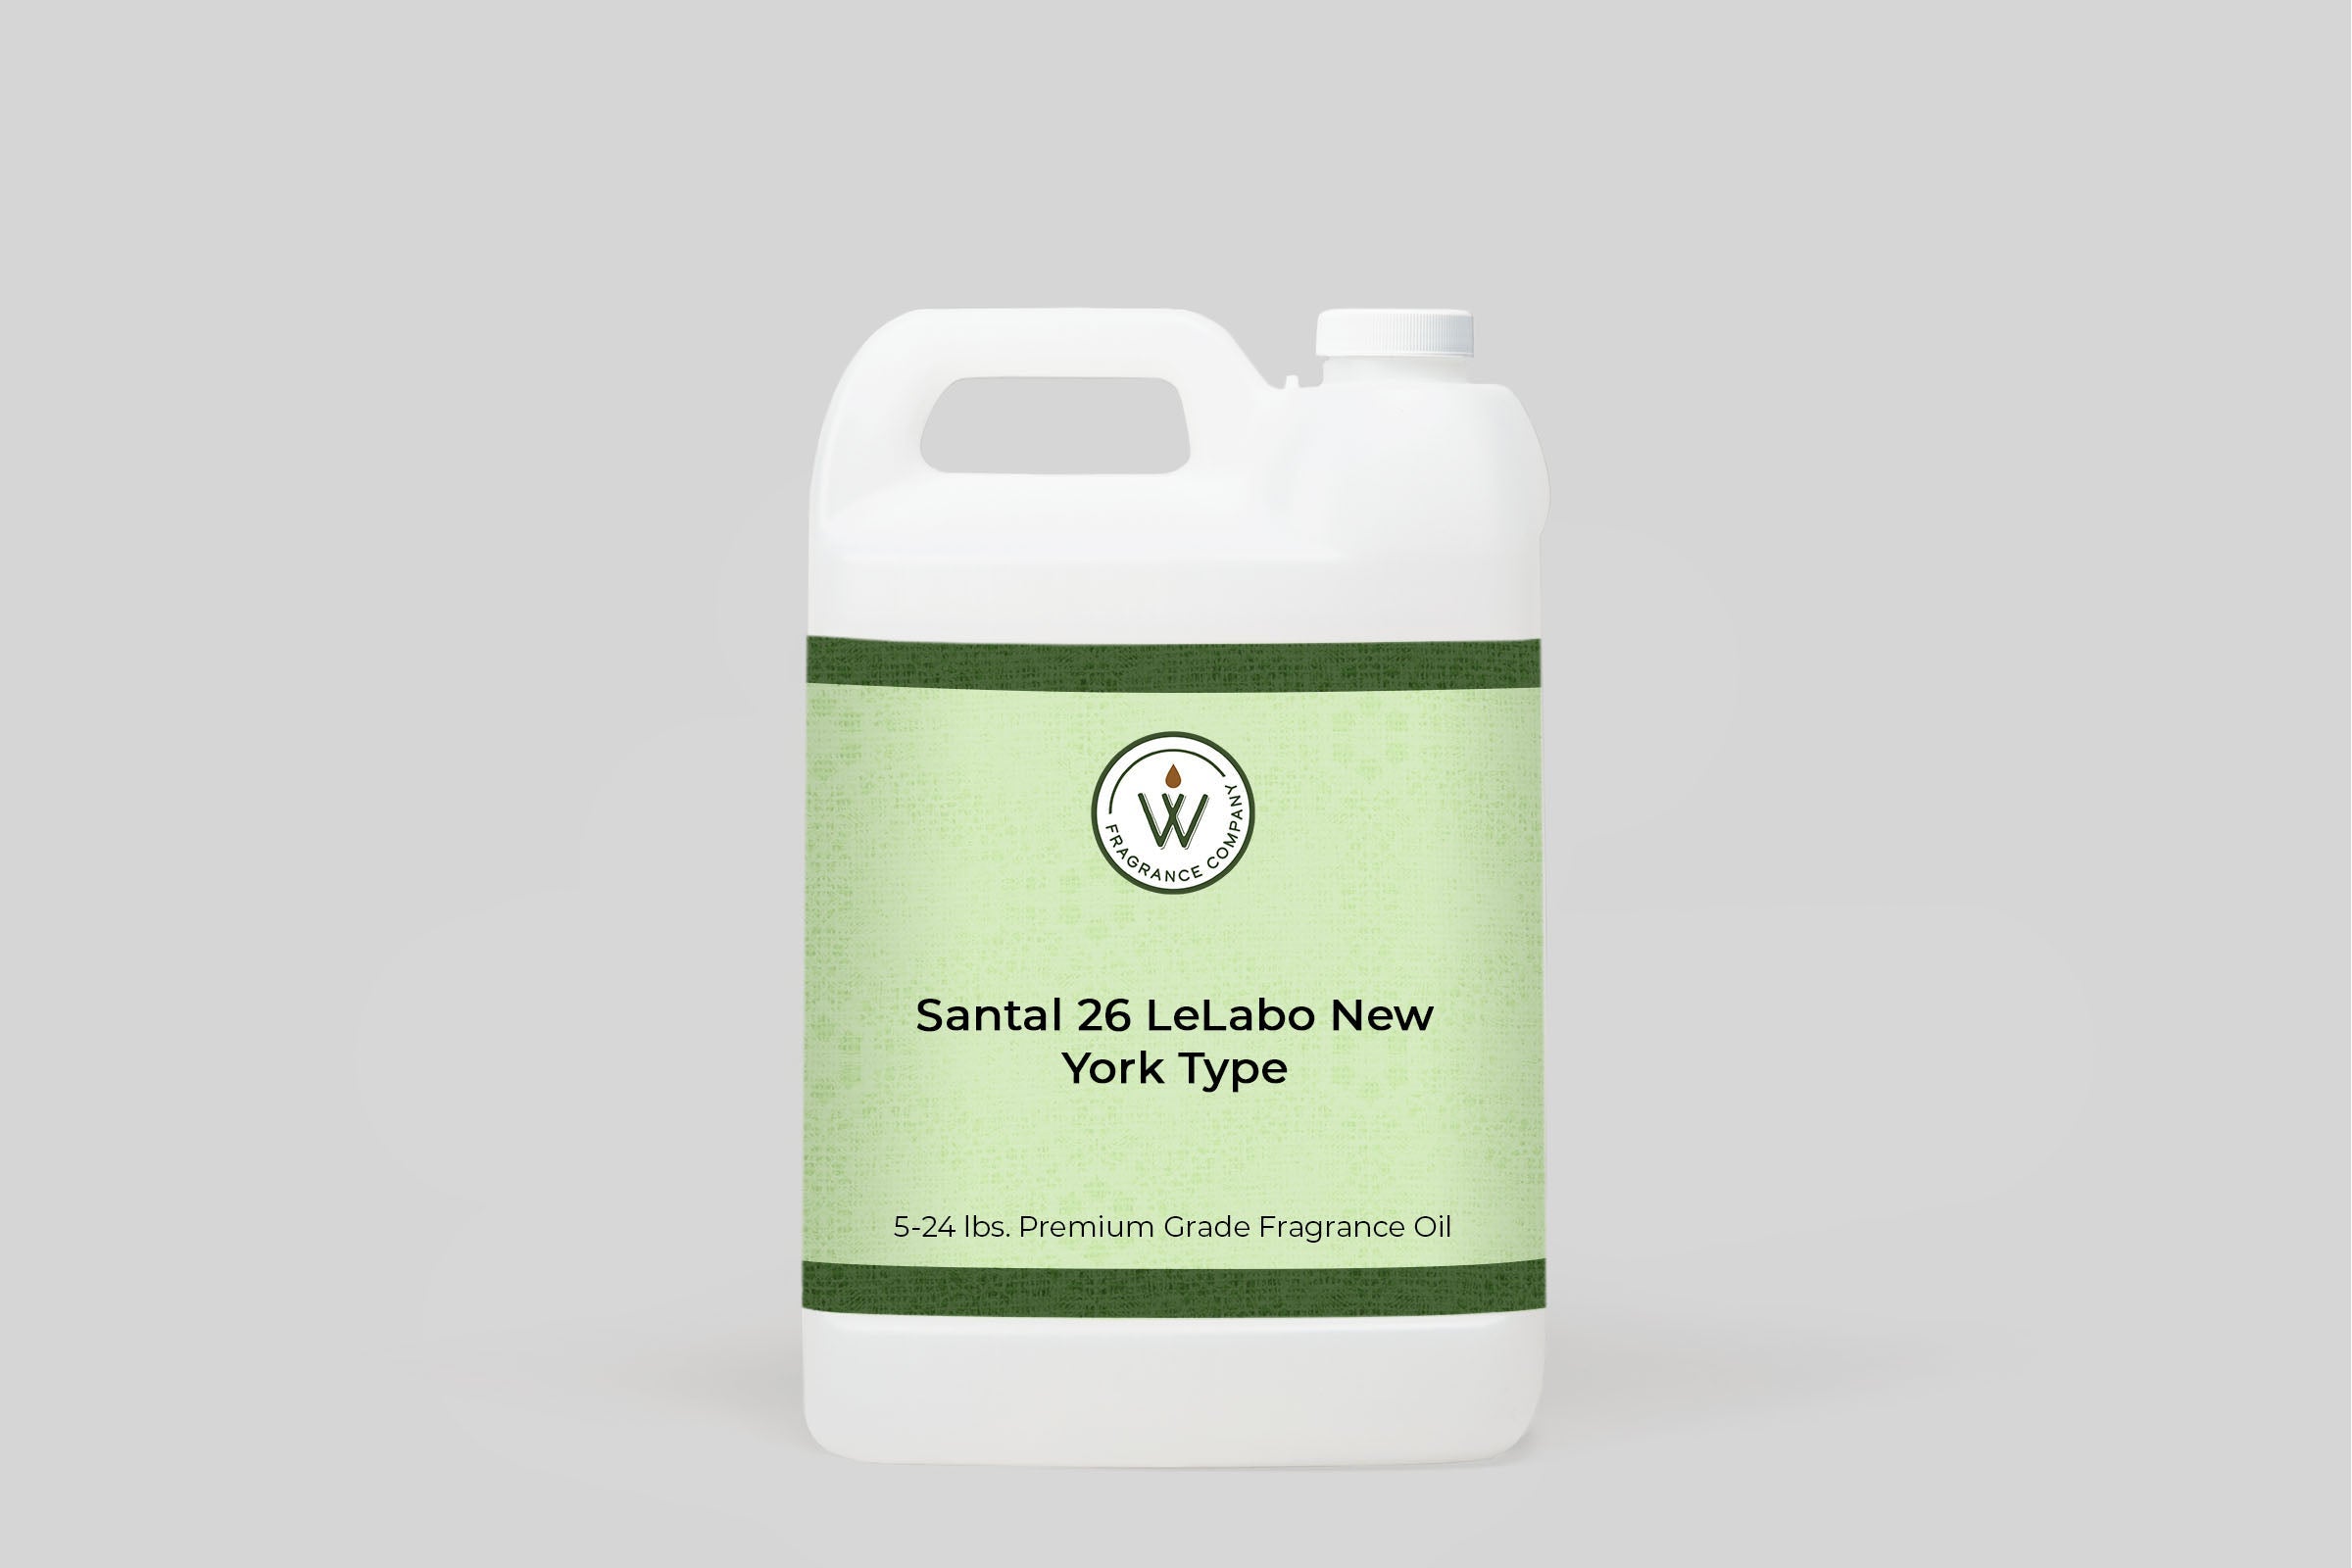 Santal 26 LeLabo New York Type Fragrance Oil